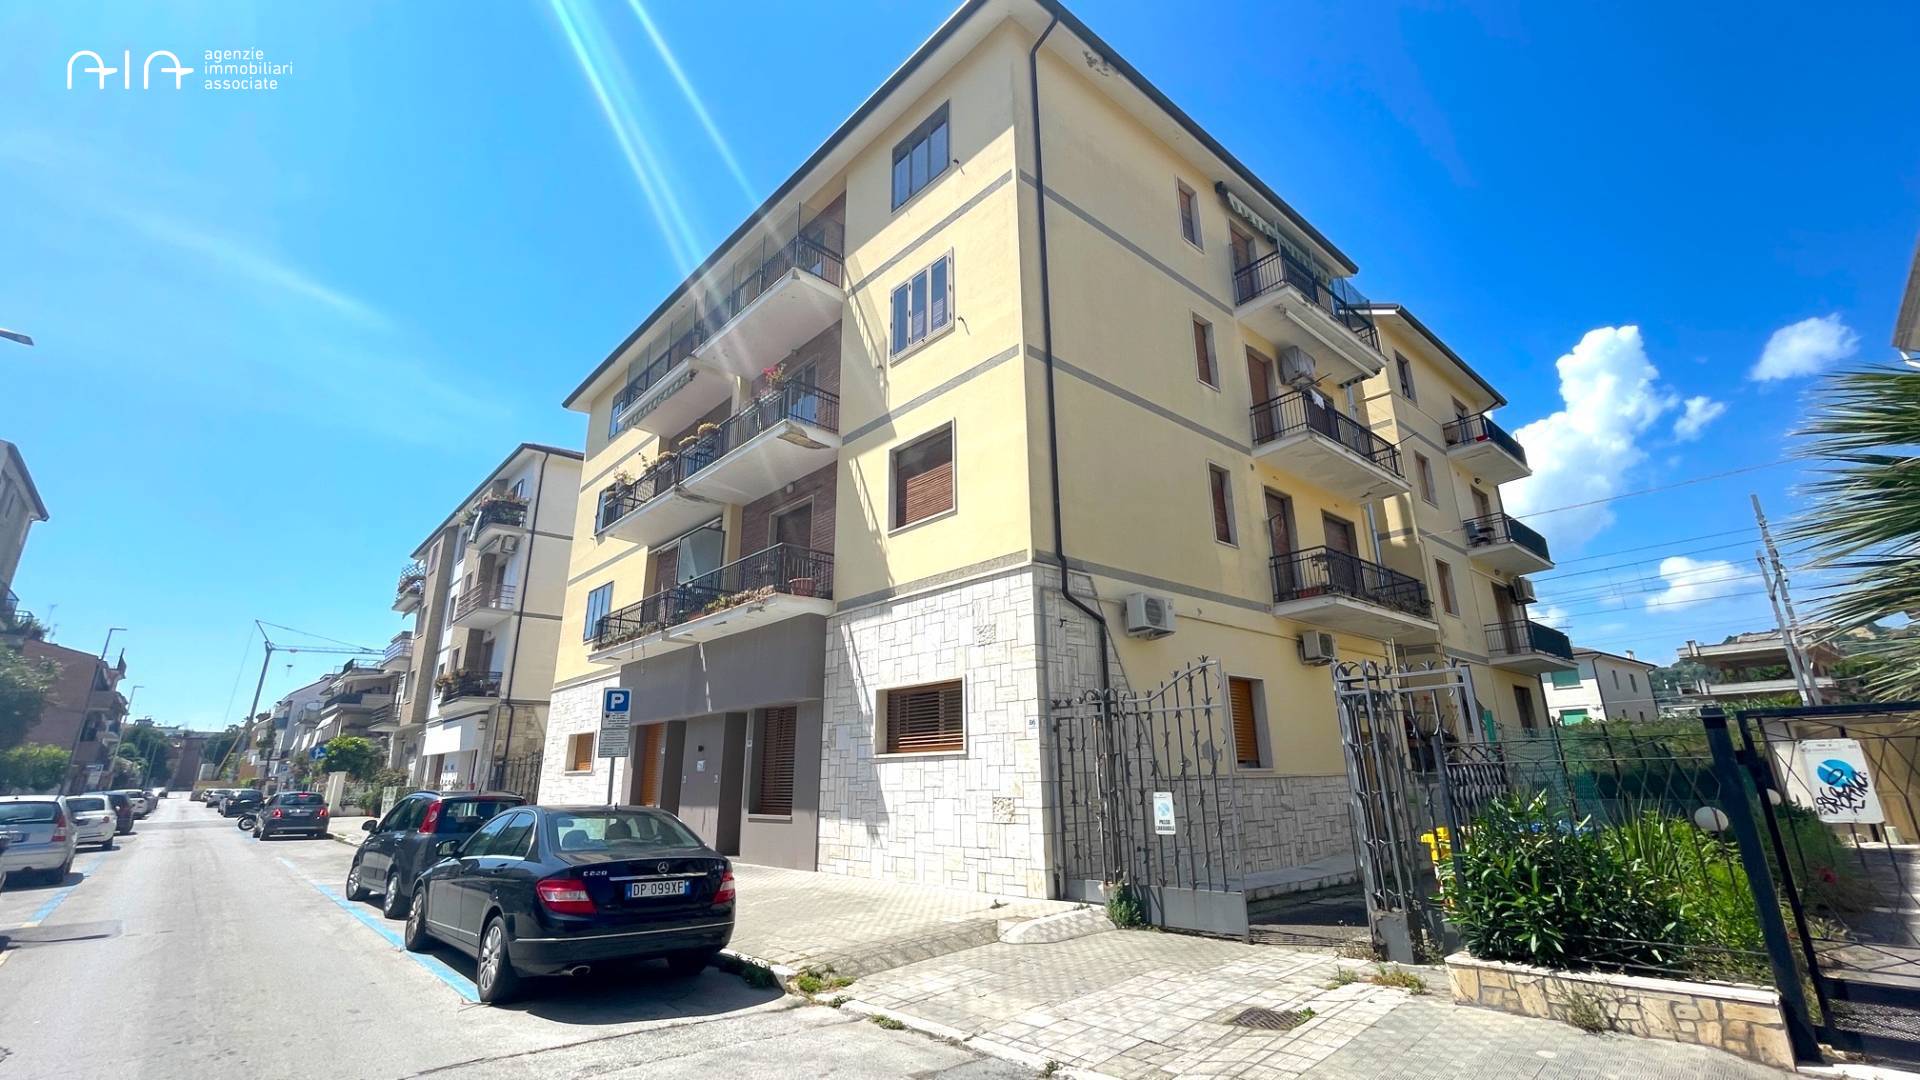 Appartamento in vendita a San Benedetto del Tronto, 4 locali, zona Località: Centralissima, prezzo € 250.000 | PortaleAgenzieImmobiliari.it